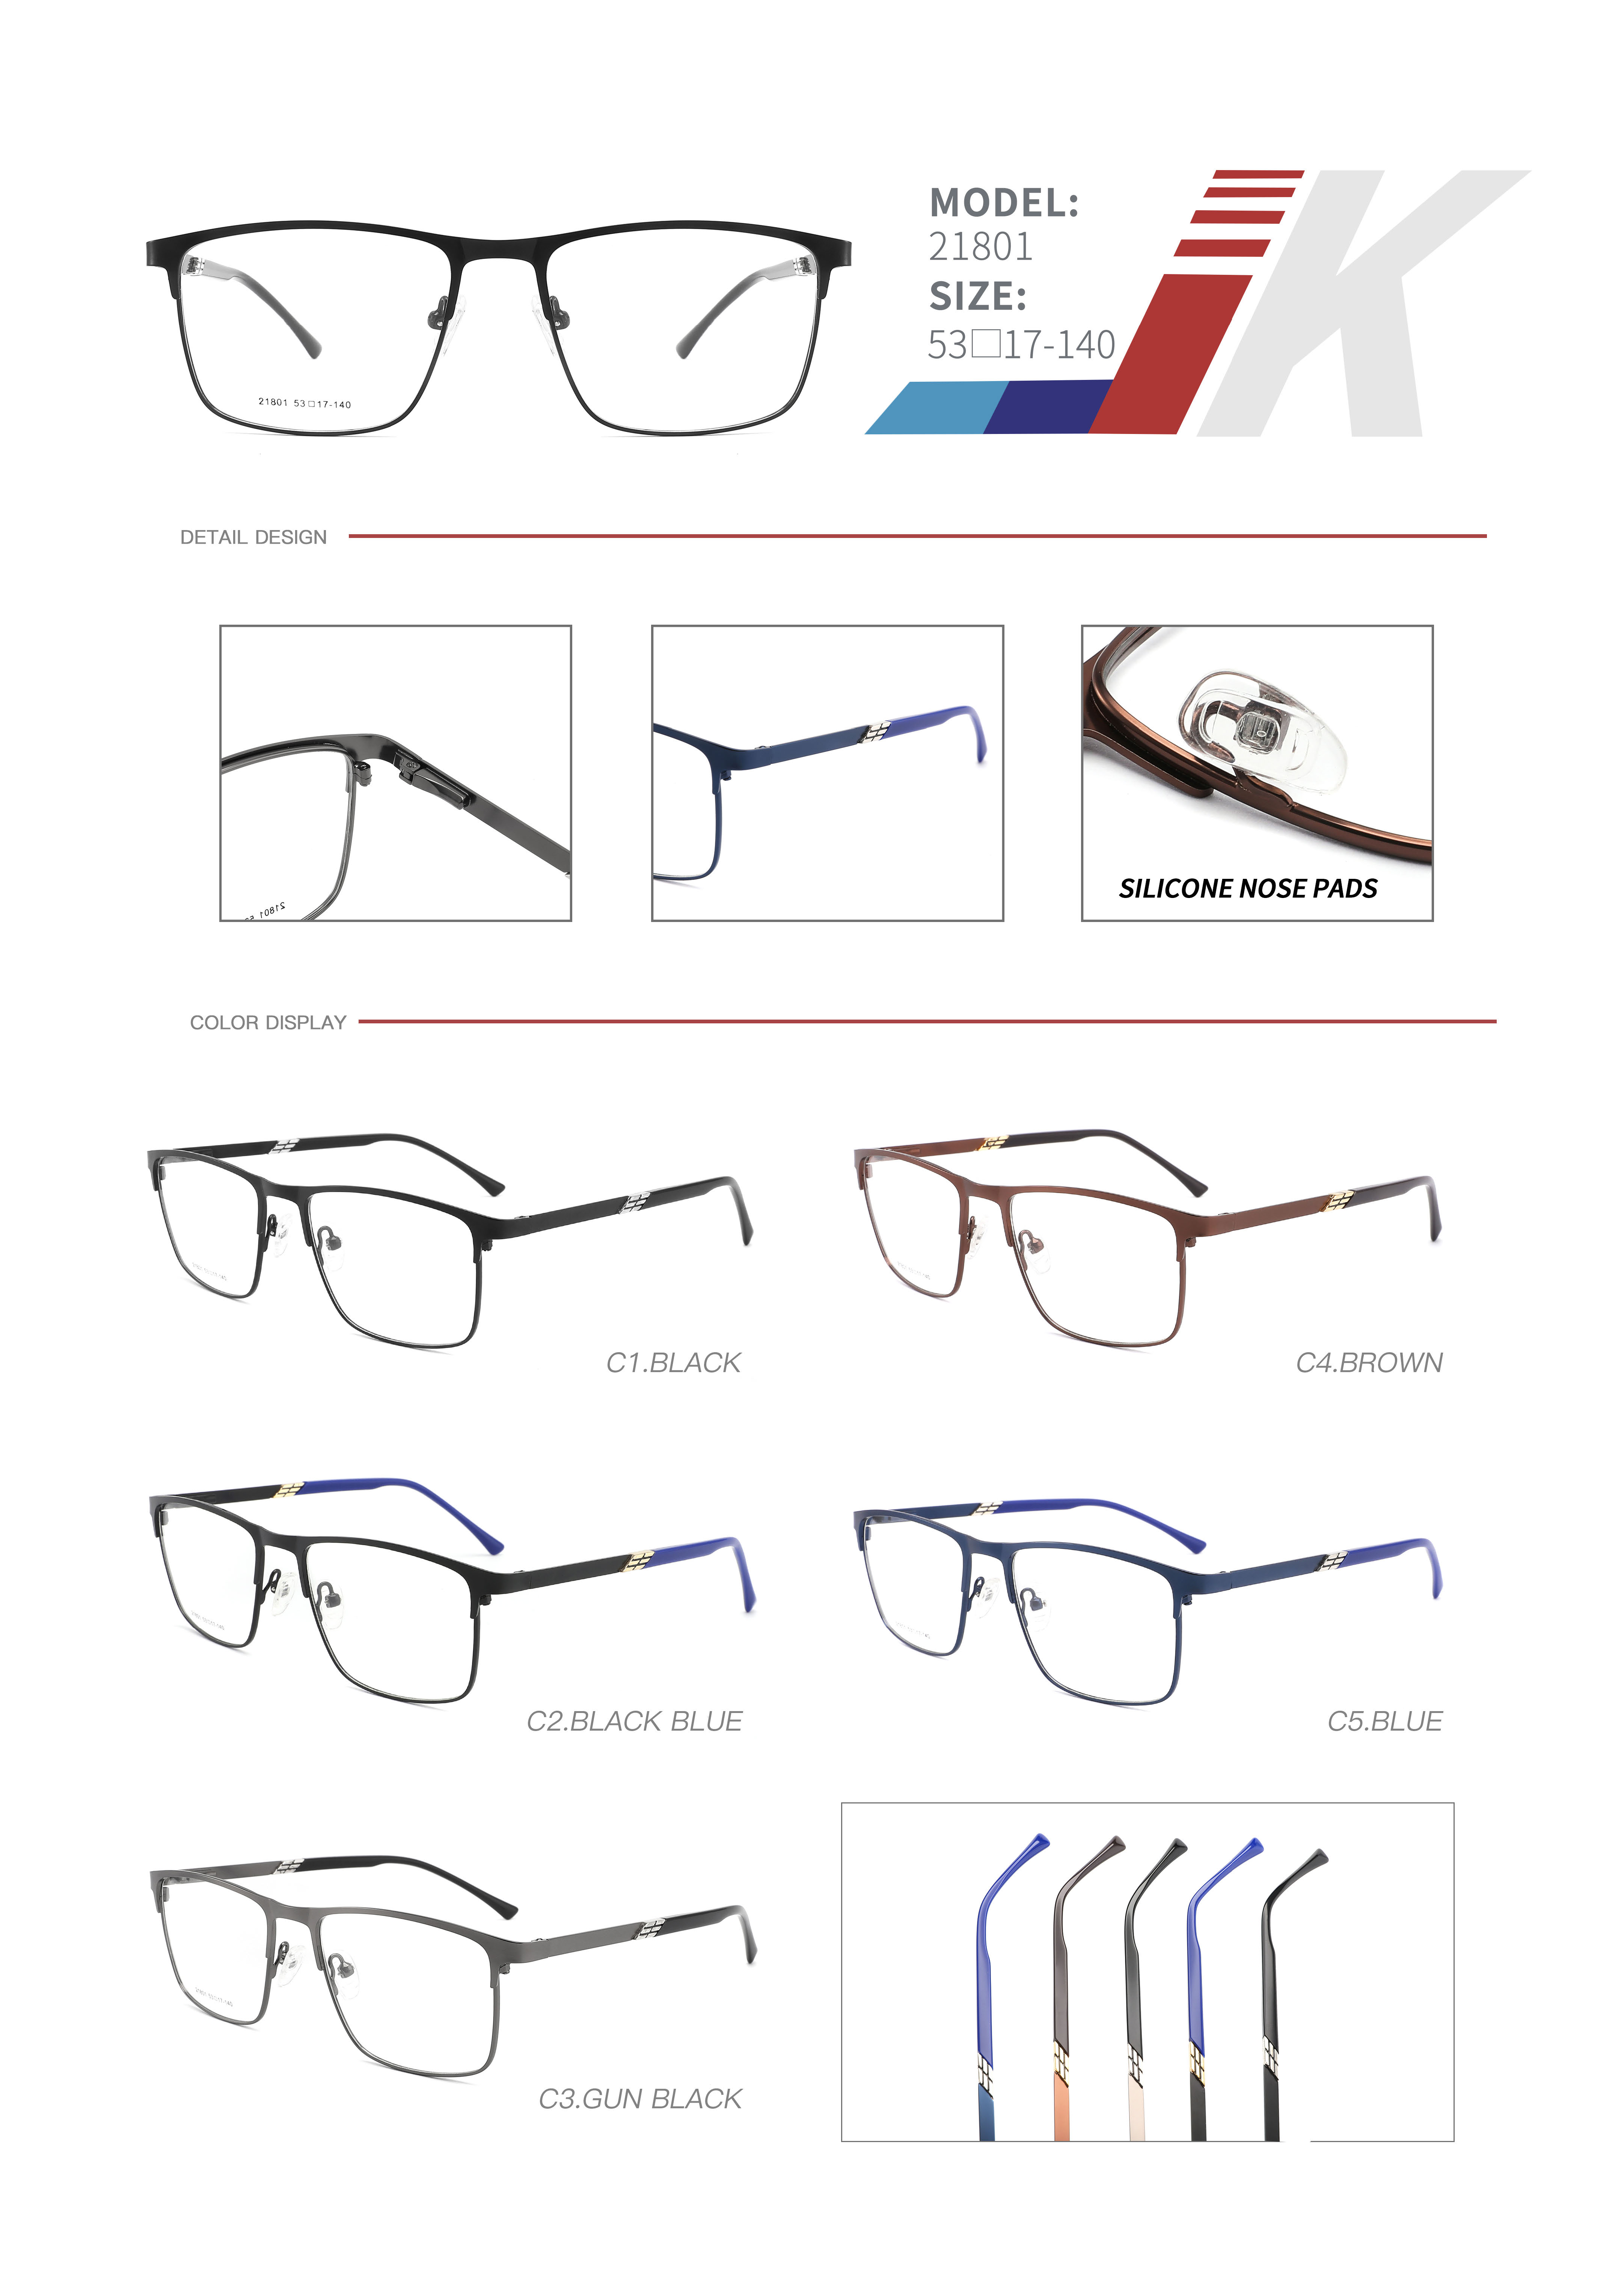 Branded glasses